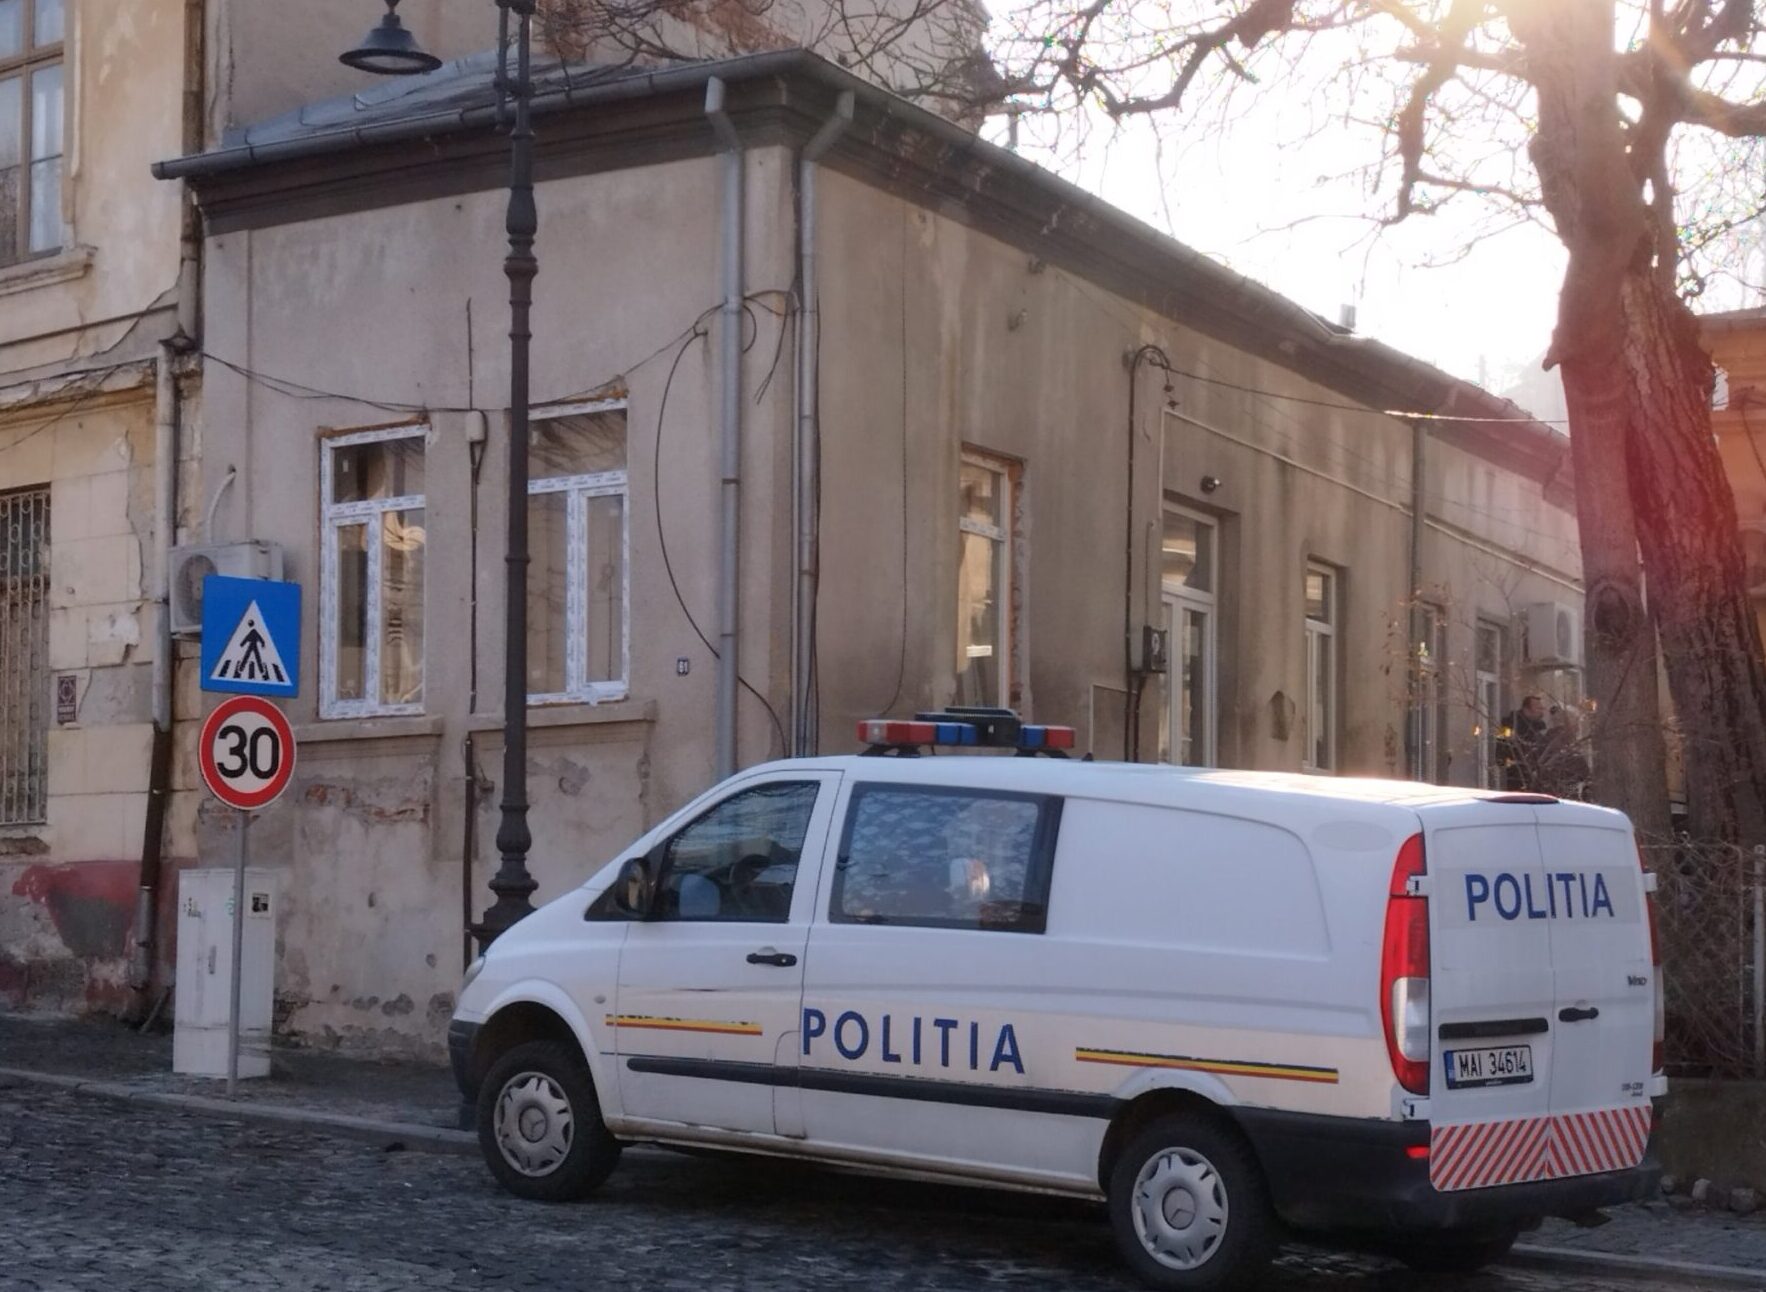 Hoții au intrat în clădirea unde era casieria (Foto: realitateaoltului.ro)